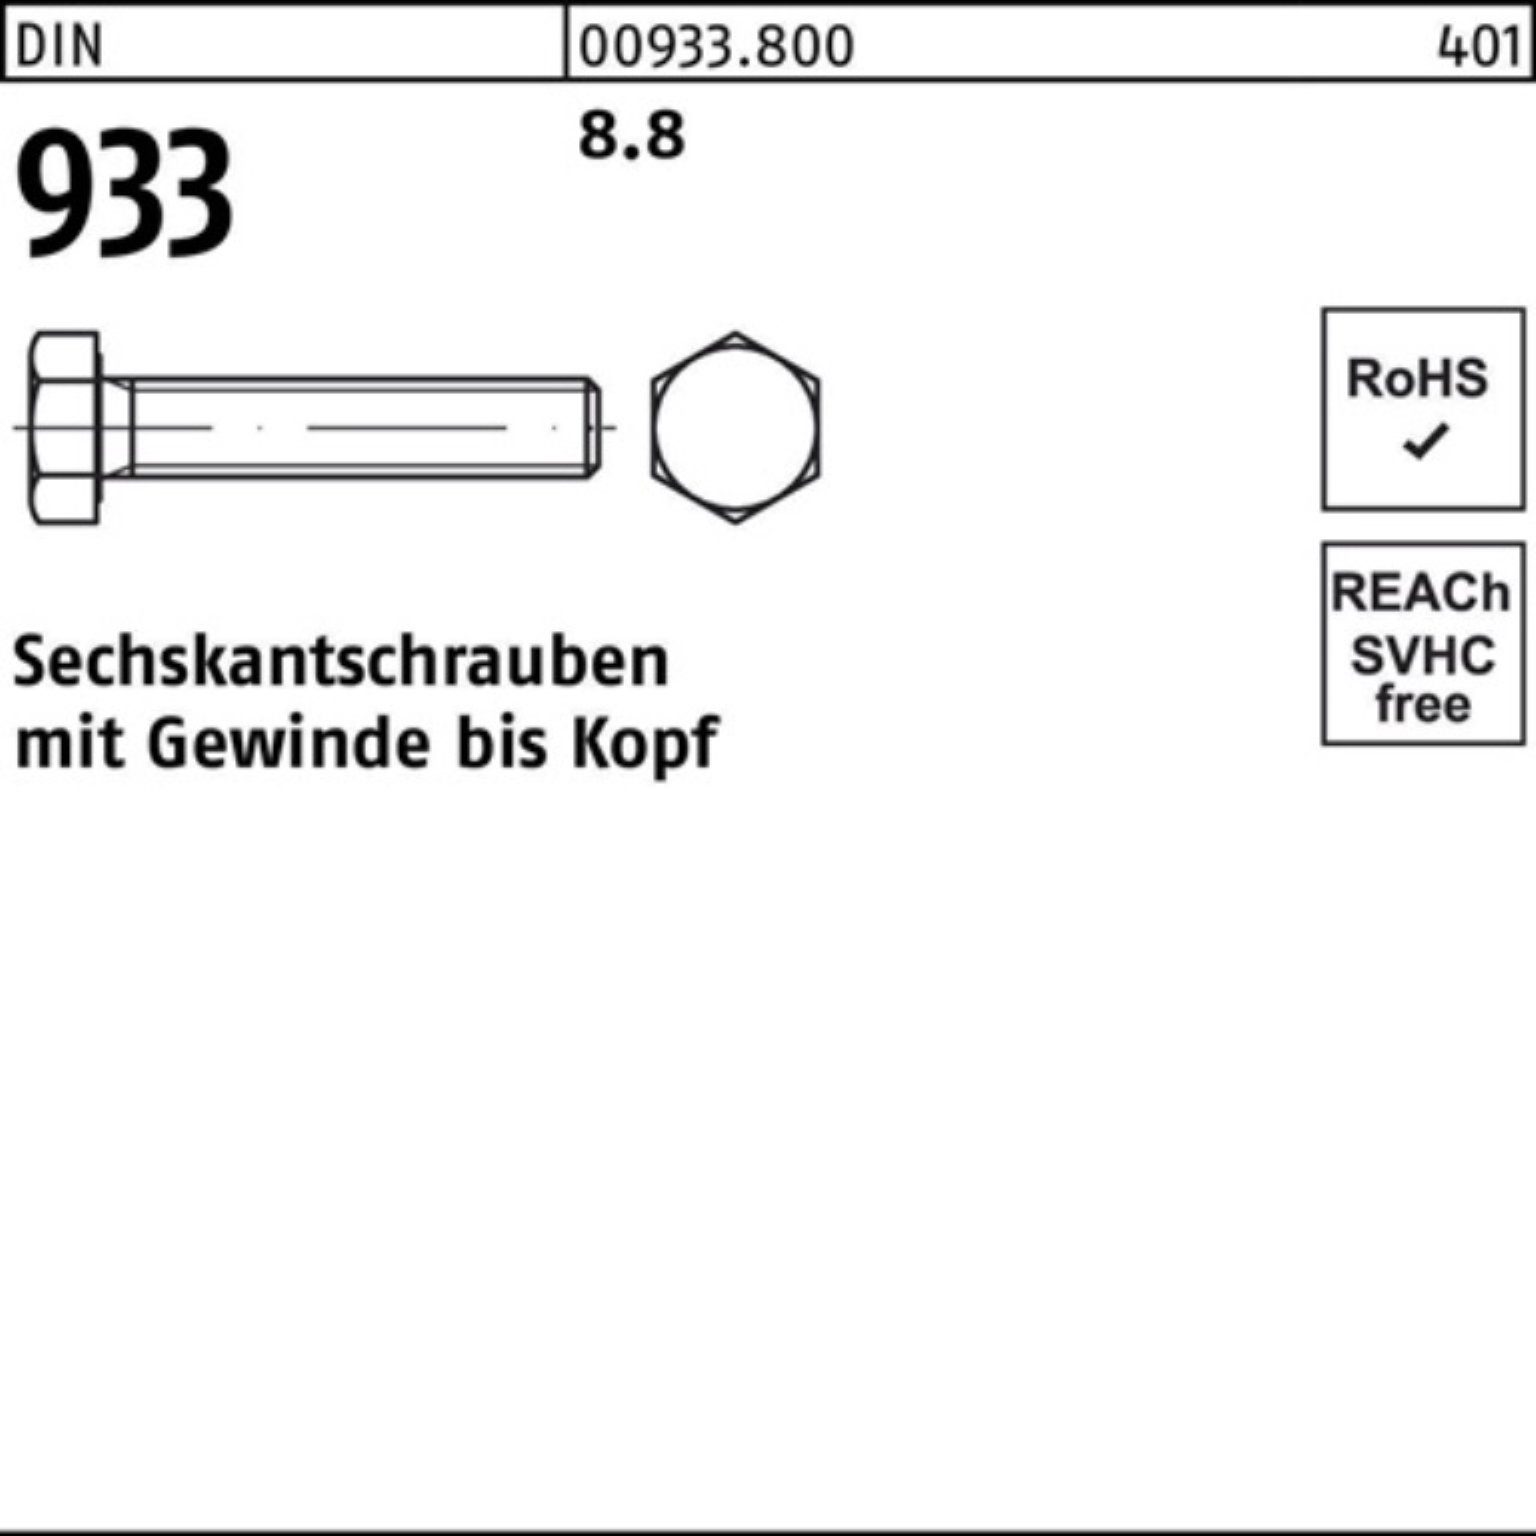 Reyher Sechskantschraube 100er M12x 933 Stück 933 Sechskantschraube 8.8 120 DIN 50 DIN Pack VG